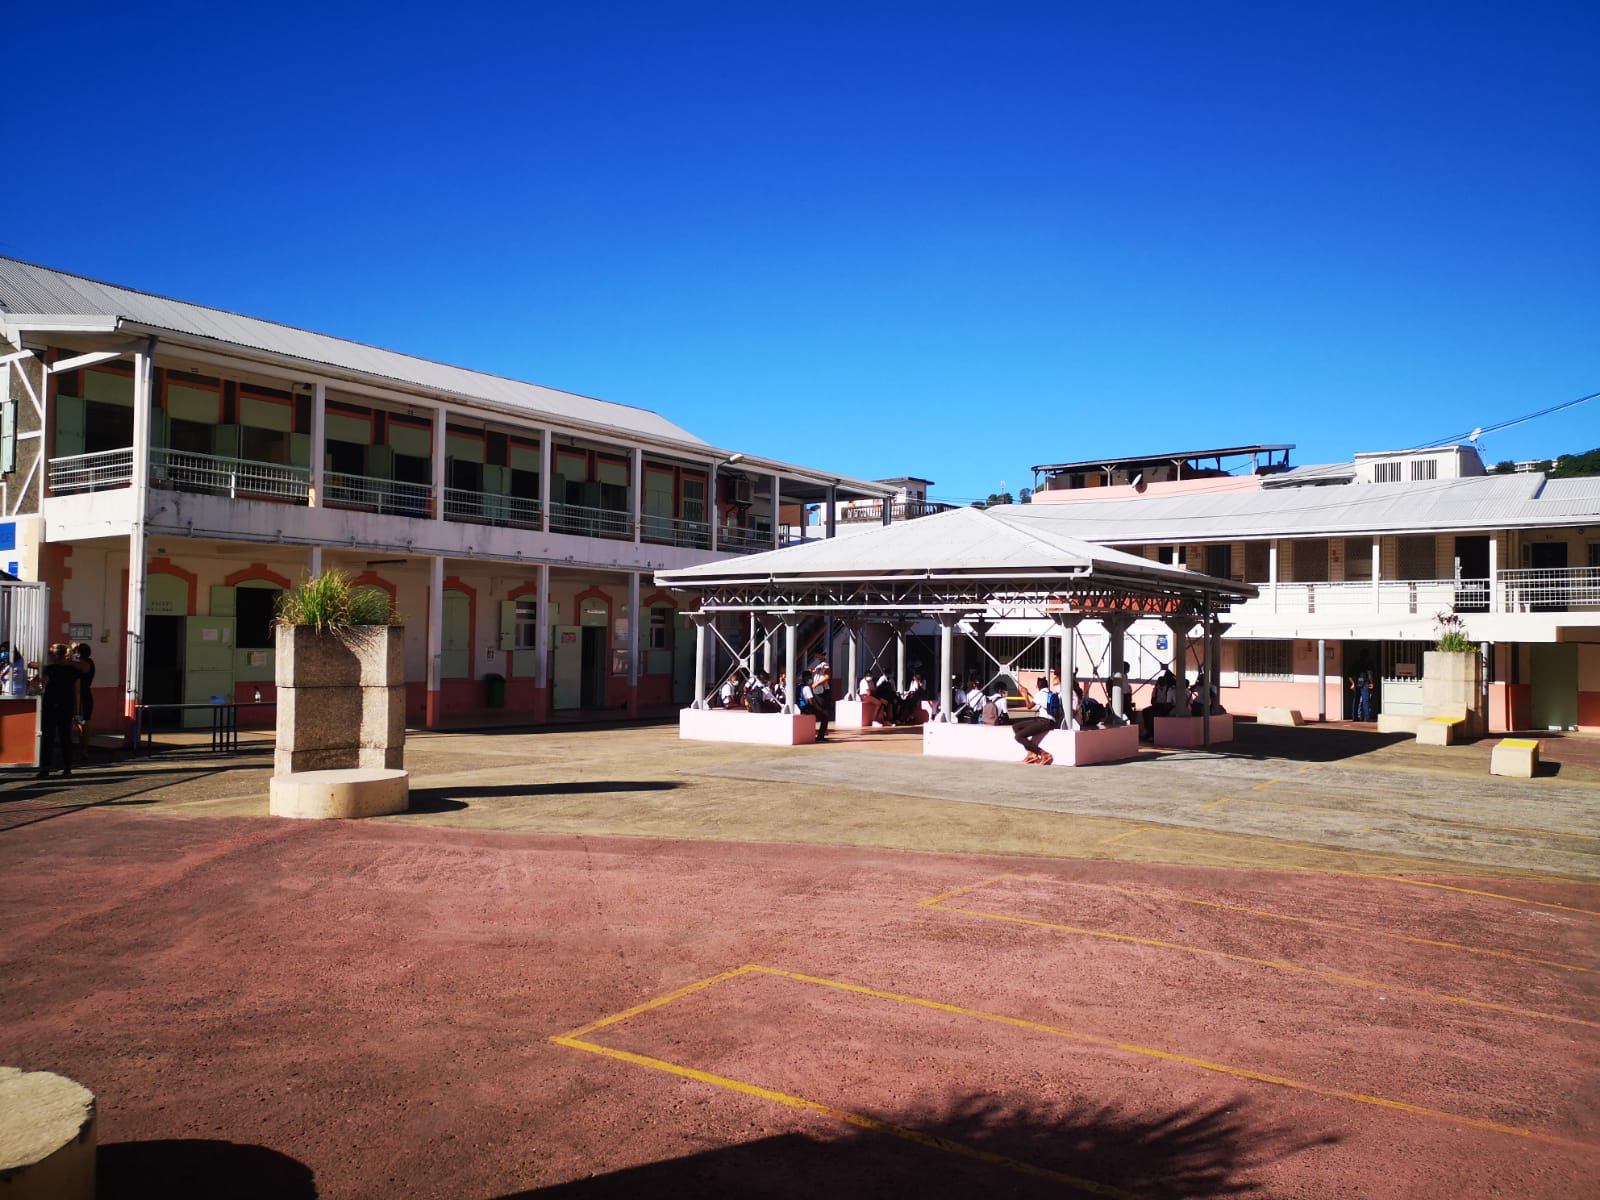     C'est la rentrée pour 69 459 élèves en Martinique

